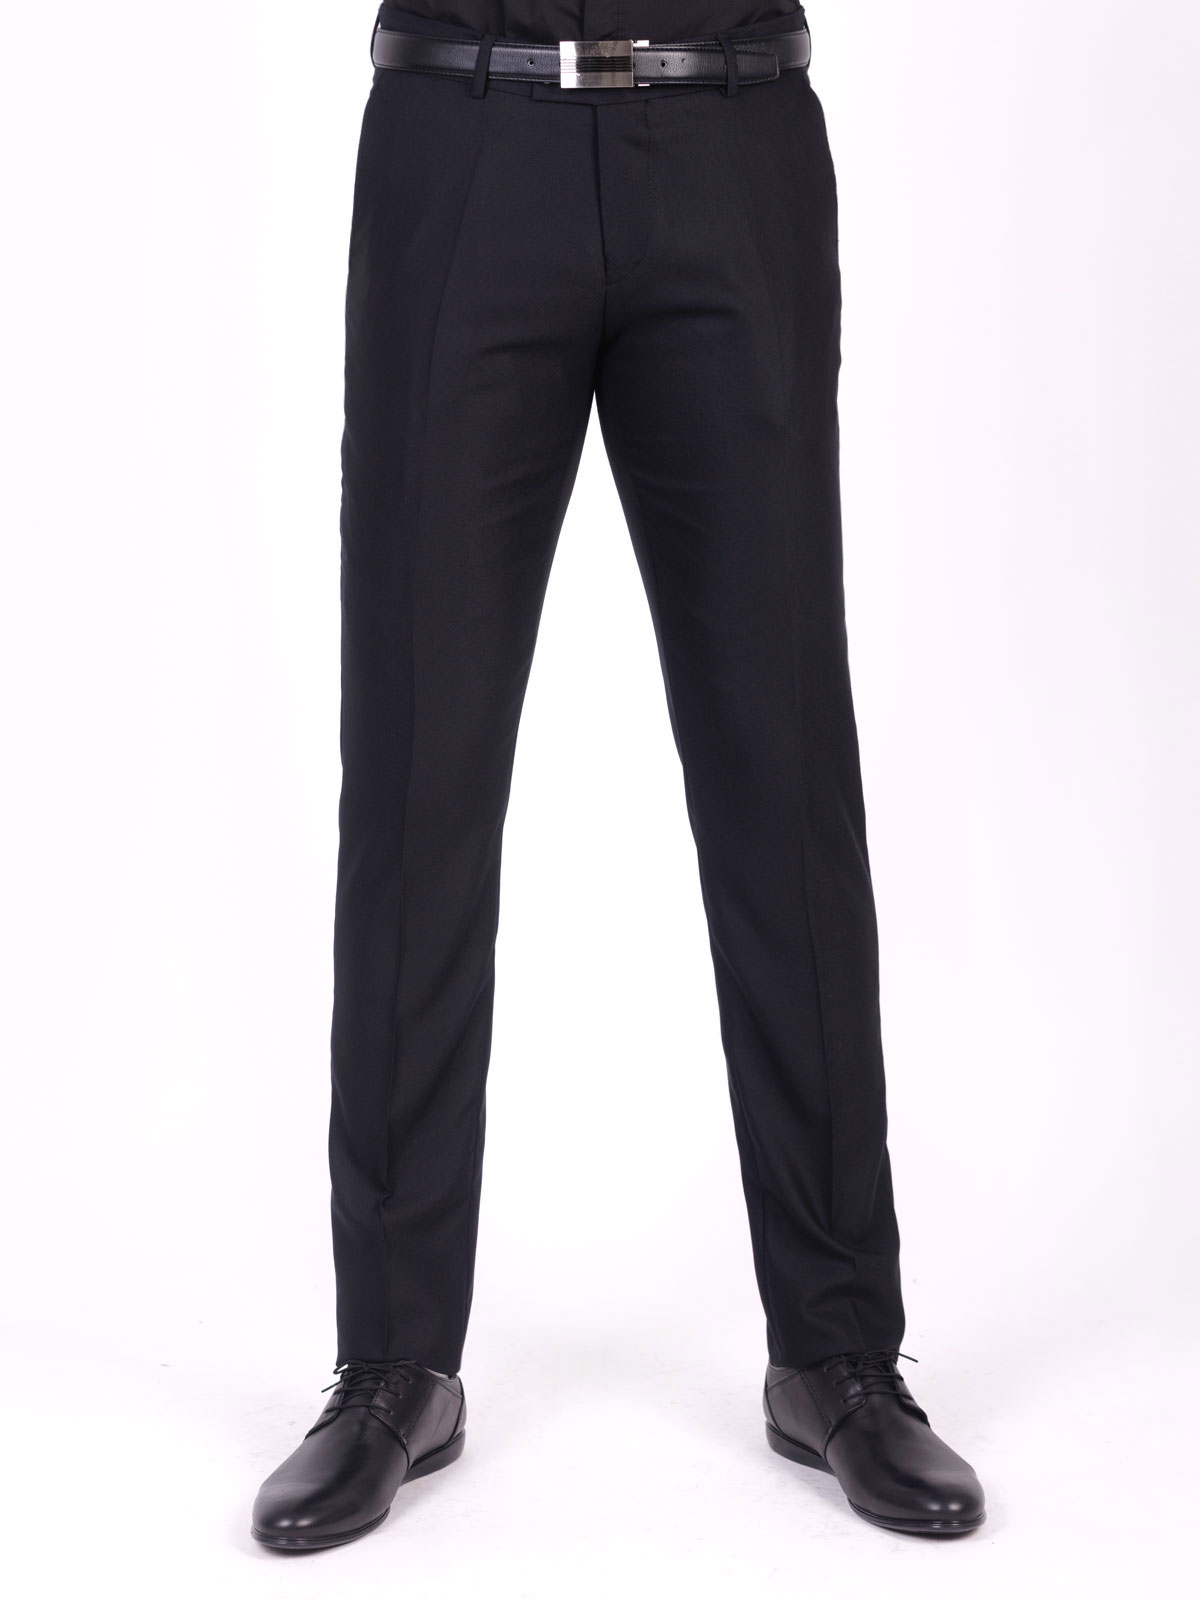 Κομψό ανδρικό μαύρο κοστούμι - 68070 € 212.60 img3